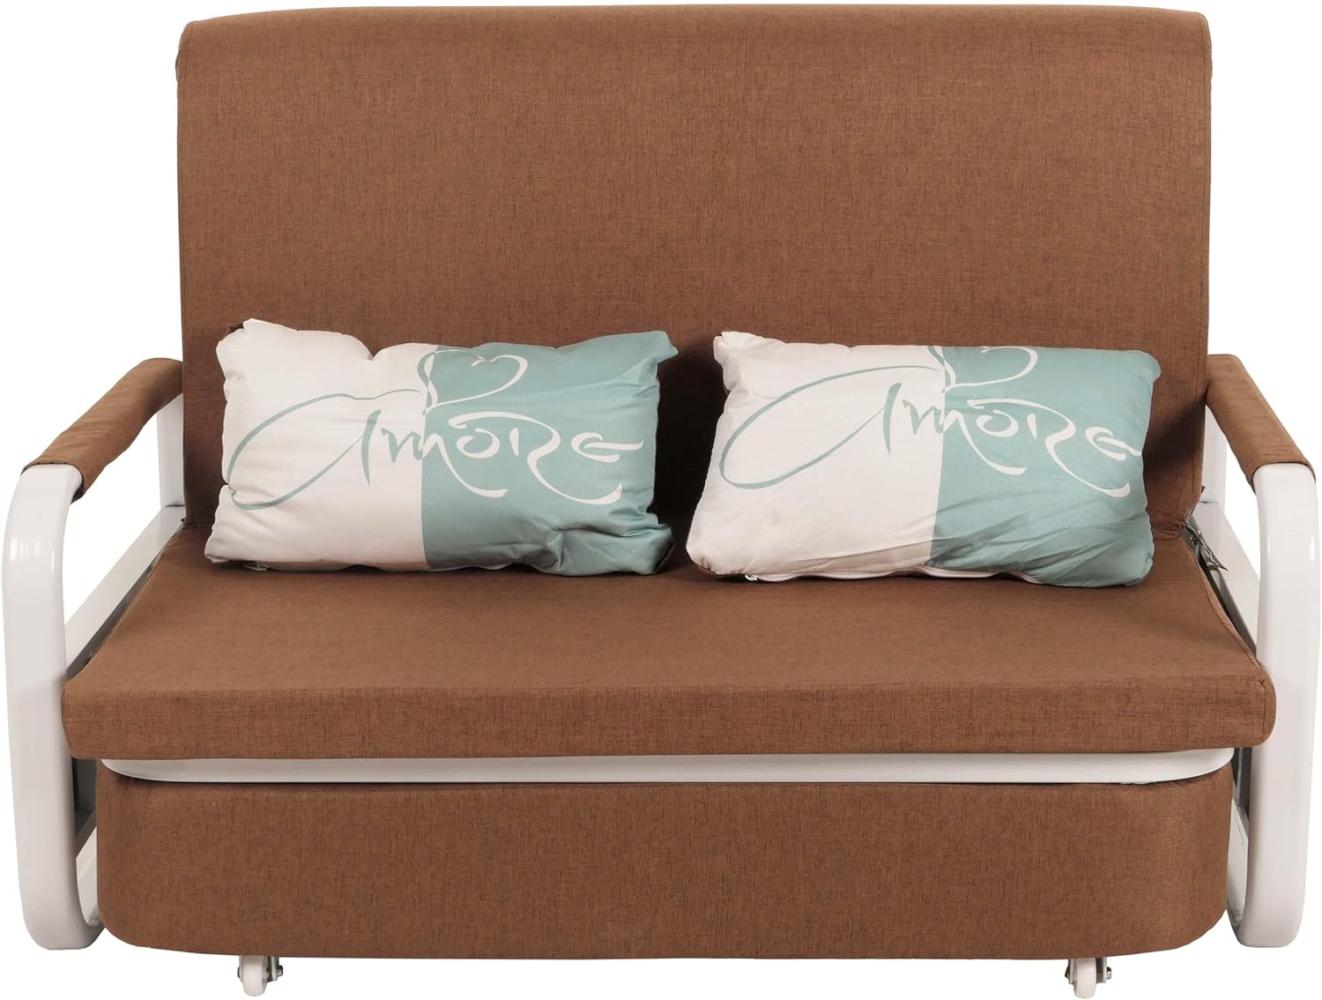 Schlafsofa HWC-M83, Schlafcouch Couch Sofa, Schlaffunktion Bettkasten Liegefläche, 130x185cm ~ Stoff/Textil braun Bild 1